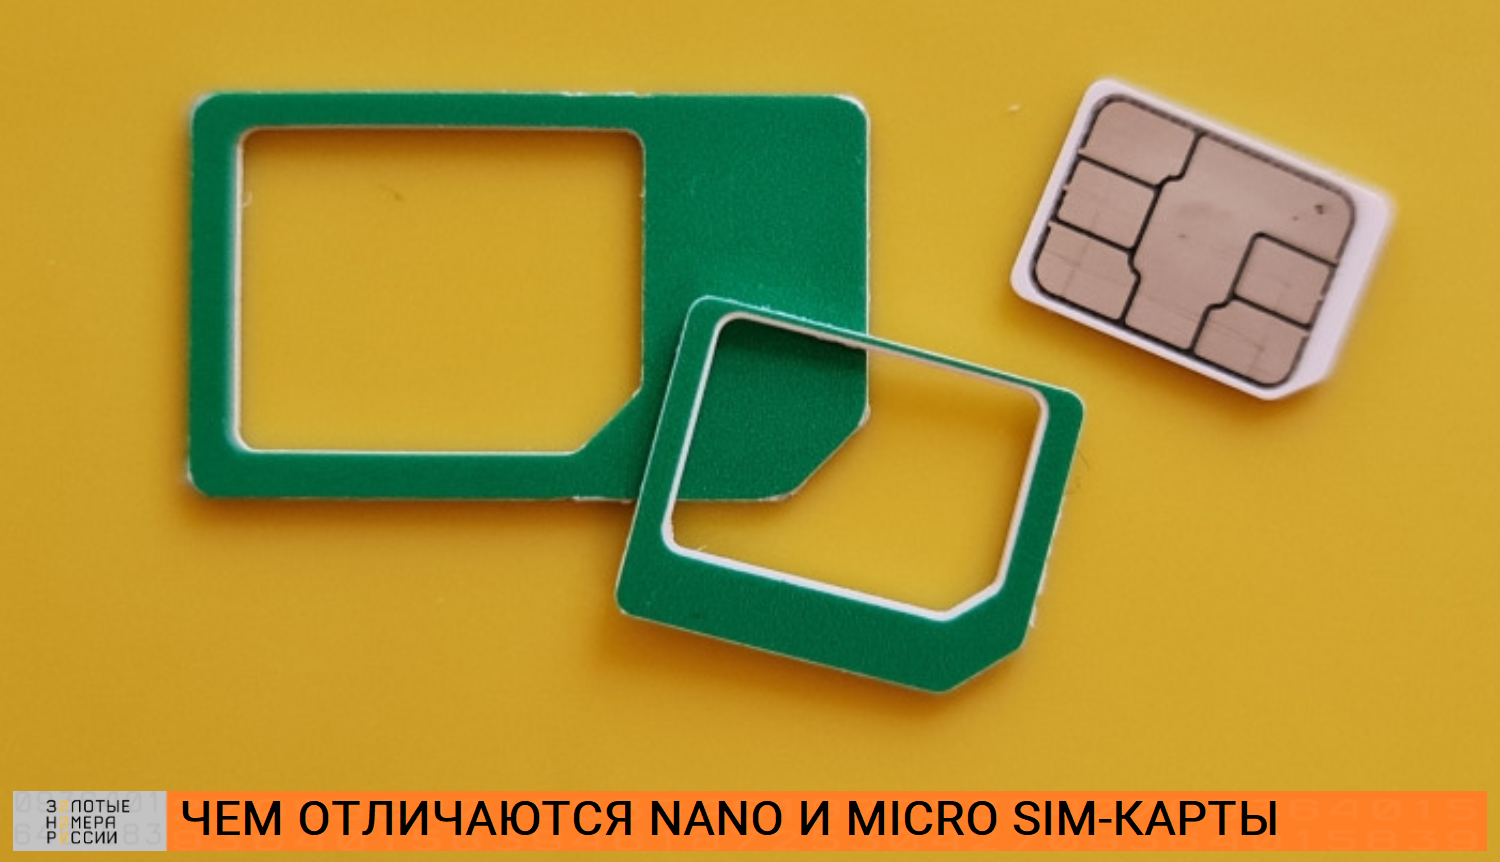 Можно ли обрезать карту SIM до Nano SIM своими руками?